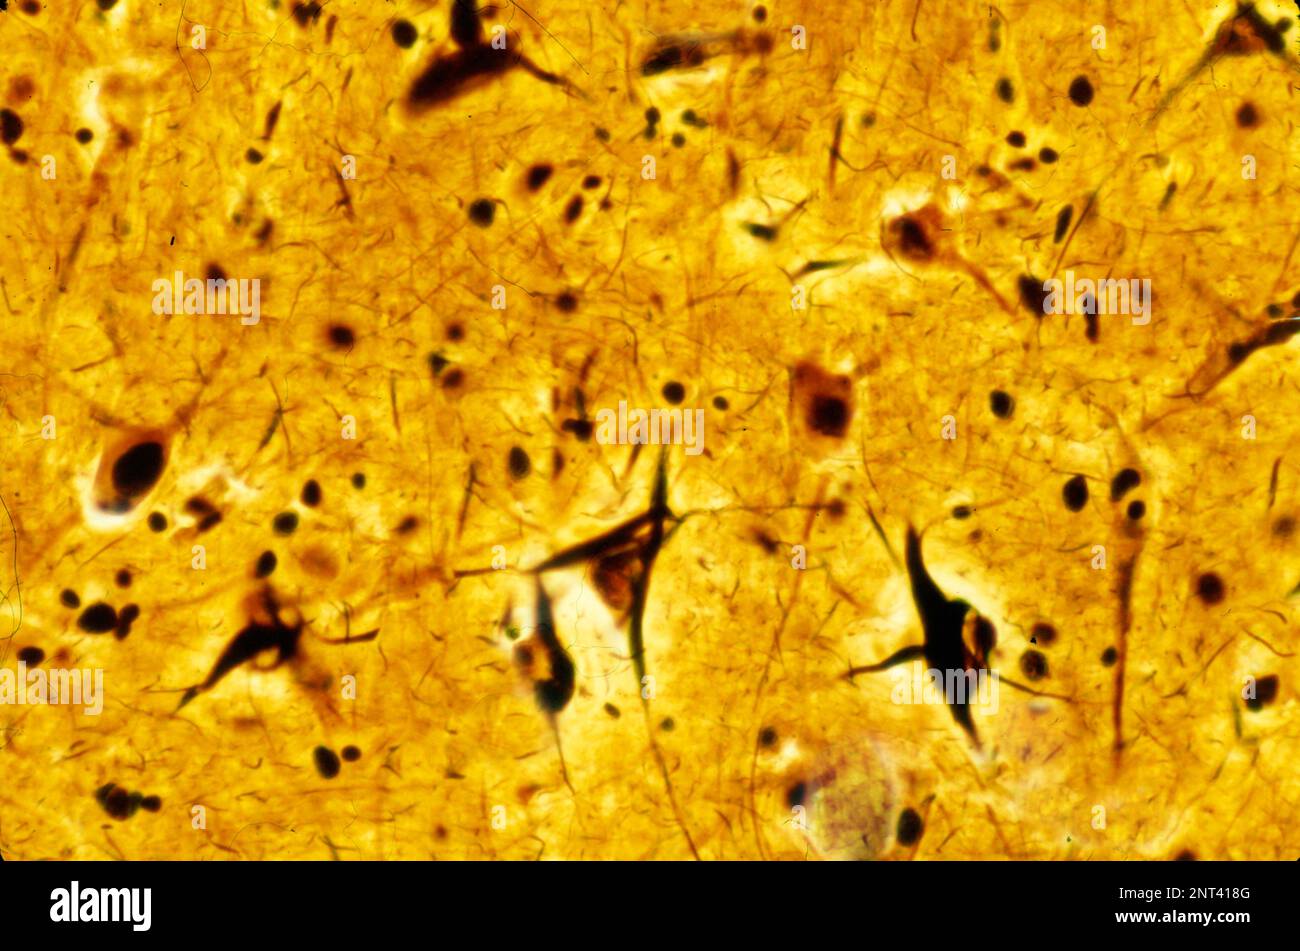 Micrographe léger d'un cortex cérébral humain montrant des enchevêtrements neurofibrillaires dans plusieurs neurones pyramidaux. Les enchevêtrements neurofibrillaires (TNF) sont un acte charant Banque D'Images